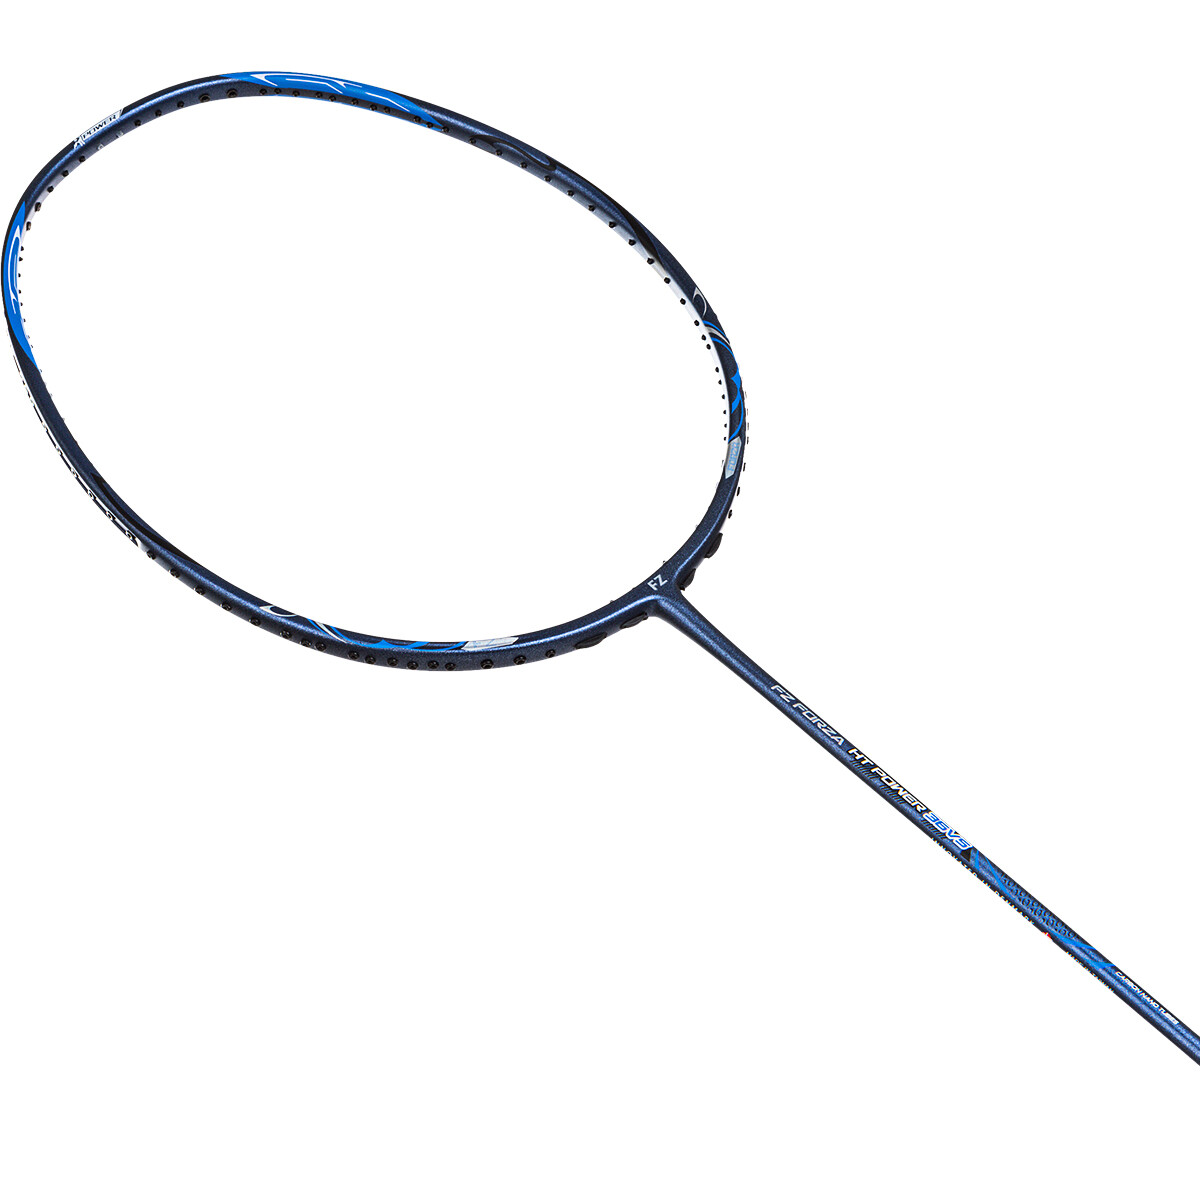 Badmintonschläger FZ Forza HT Power 36-VS